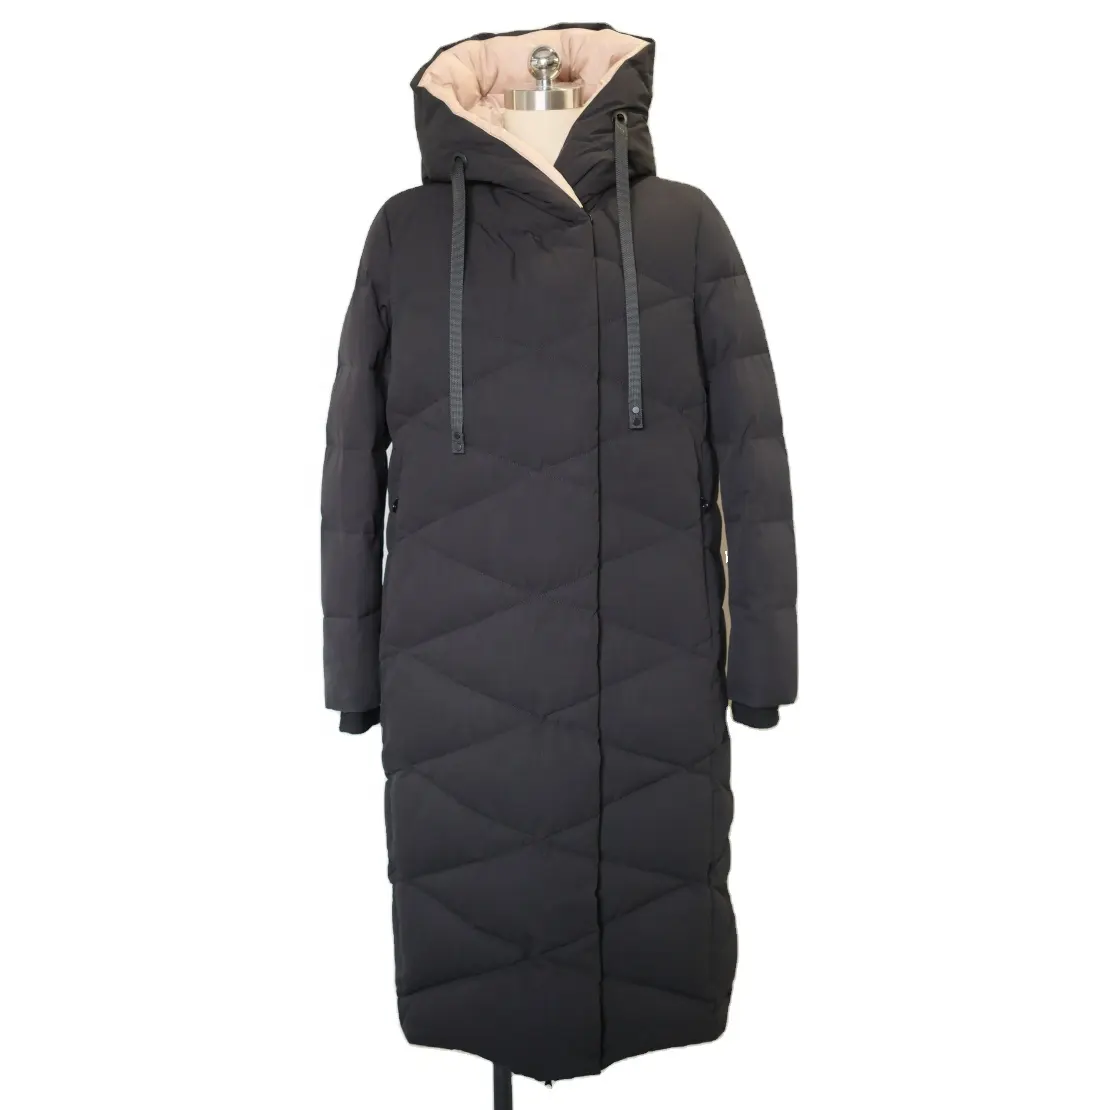 हॉट सेल महिलाओं के लिए लंबे पैडिंग कोट महिलाओं के लिए गर्म विंडप्रूफ सांस लेने योग्य आउटडोर लंबे पफर जैकेट